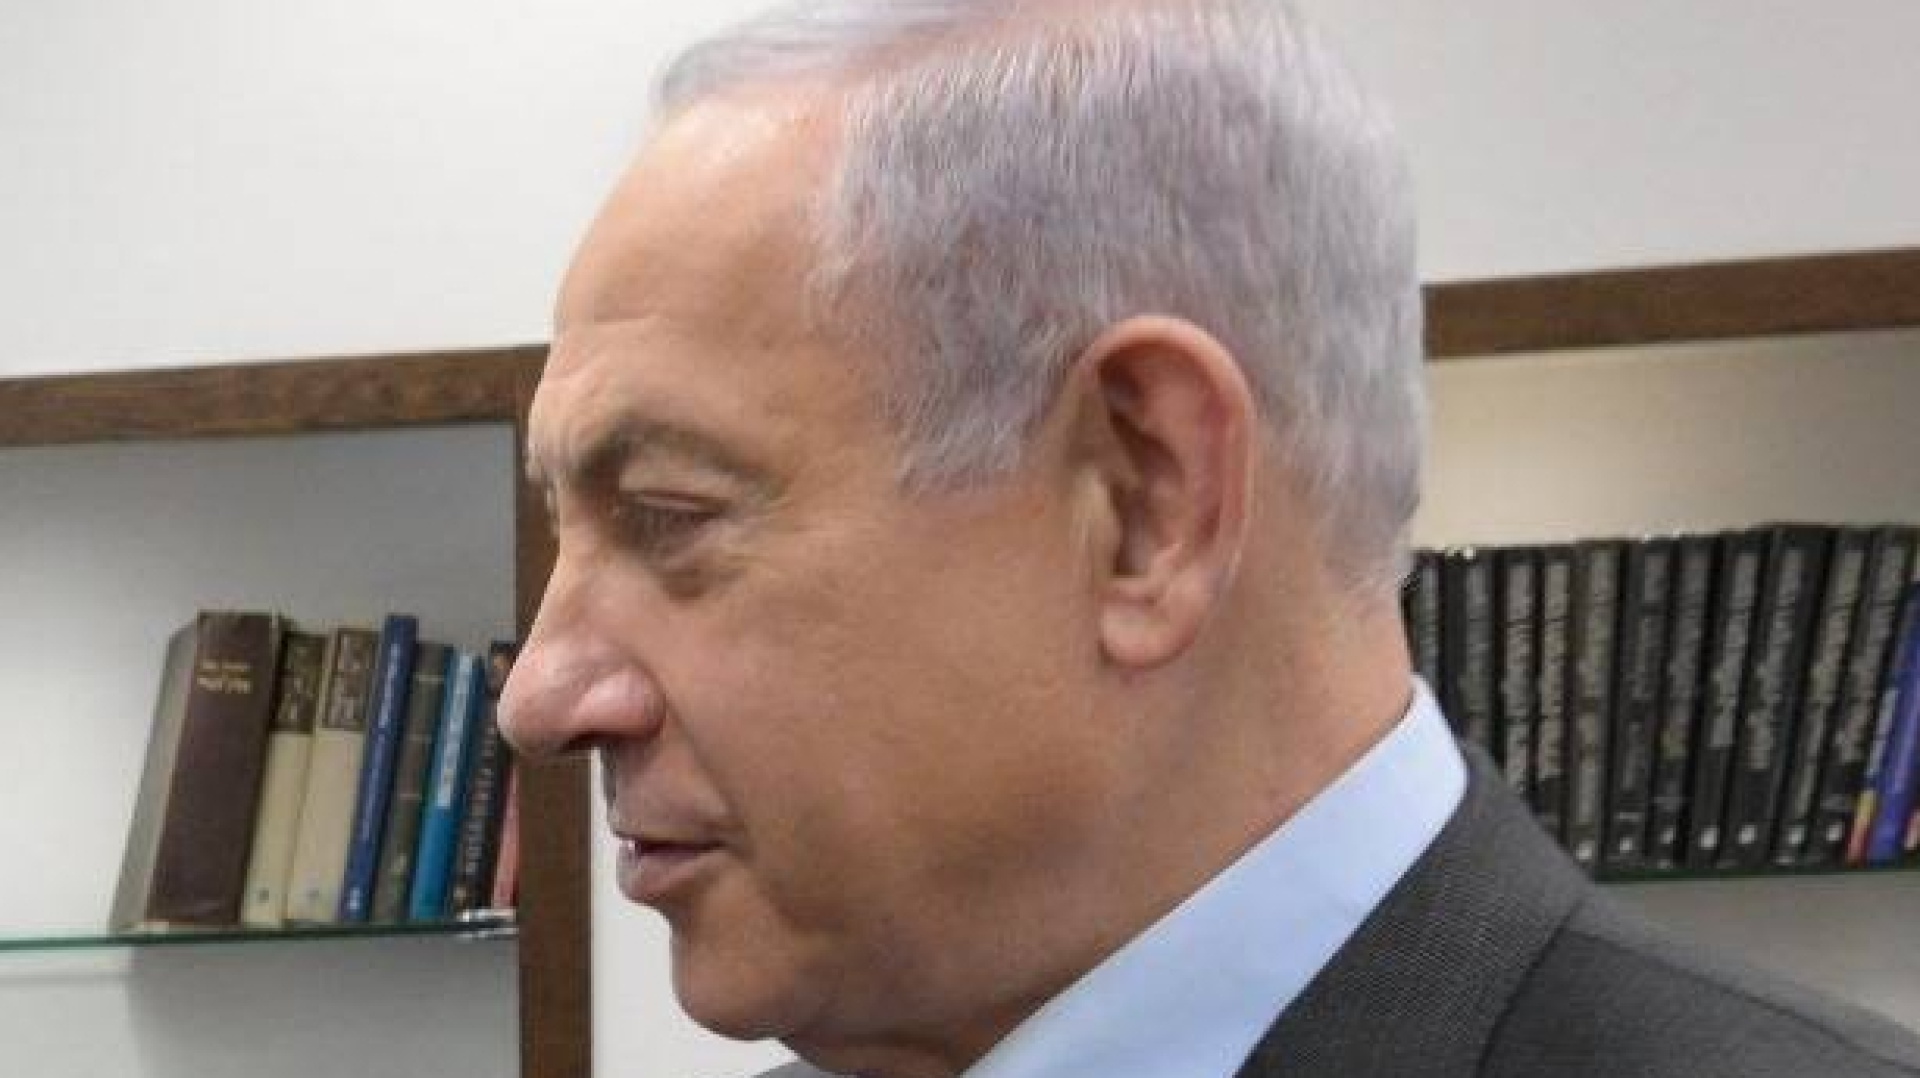 Das ist der Anfang vom Ende - Pagina 12 Netanyahu-avverte-lairan-se-ci-attacca-gli-faremo-male-wide-site-1urzy